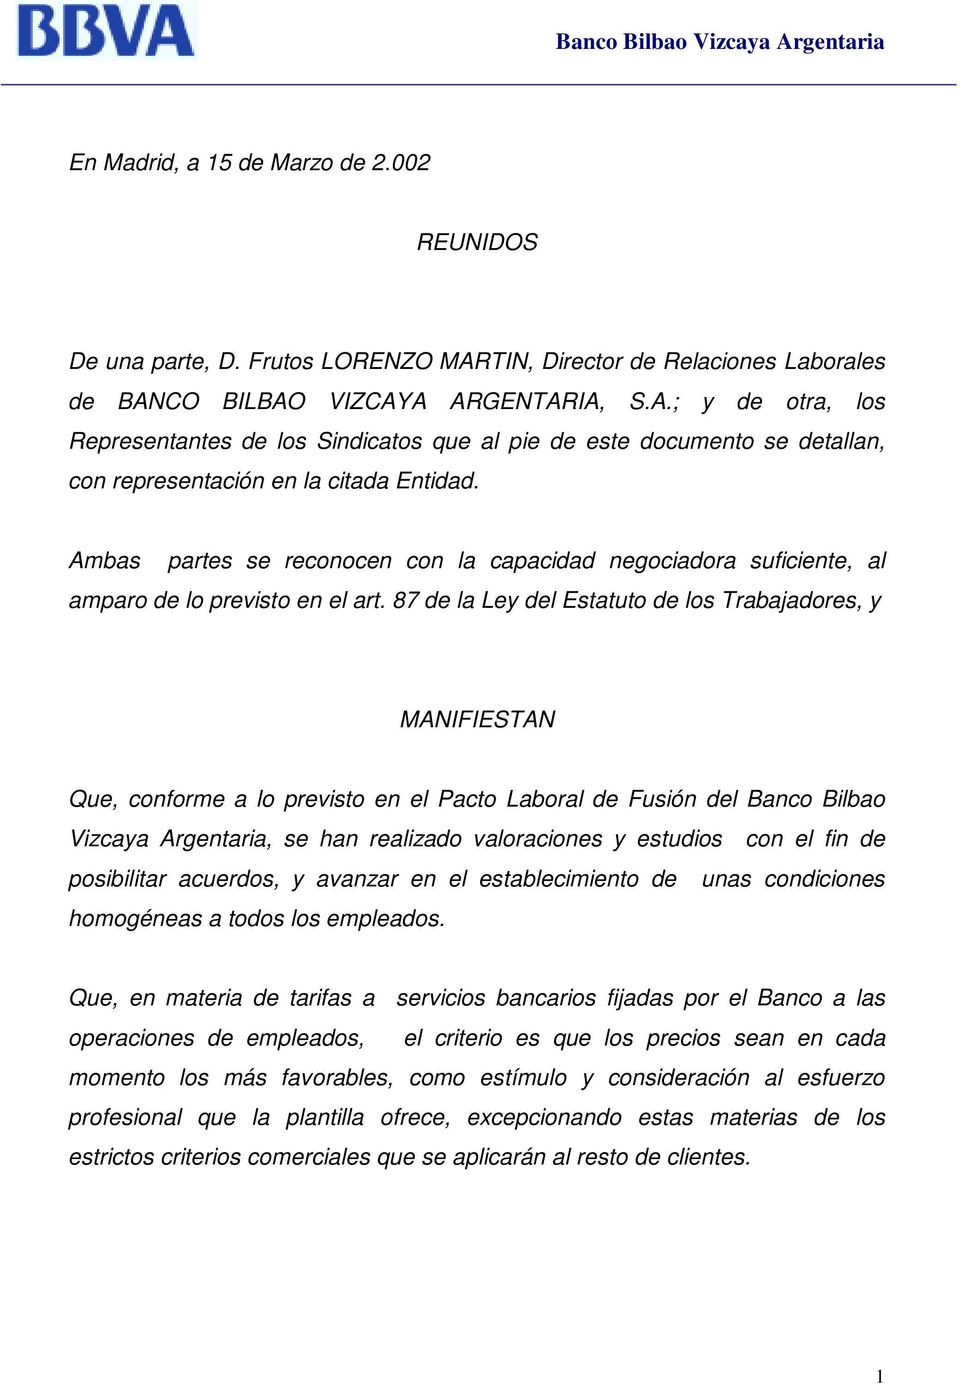 87 de la Ley del Estatuto de los Trabajadores, y MANIFIESTAN Que, conforme a lo previsto en el Pacto Laboral de Fusión del Banco Bilbao Vizcaya Argentaria, se han realizado valoraciones y estudios